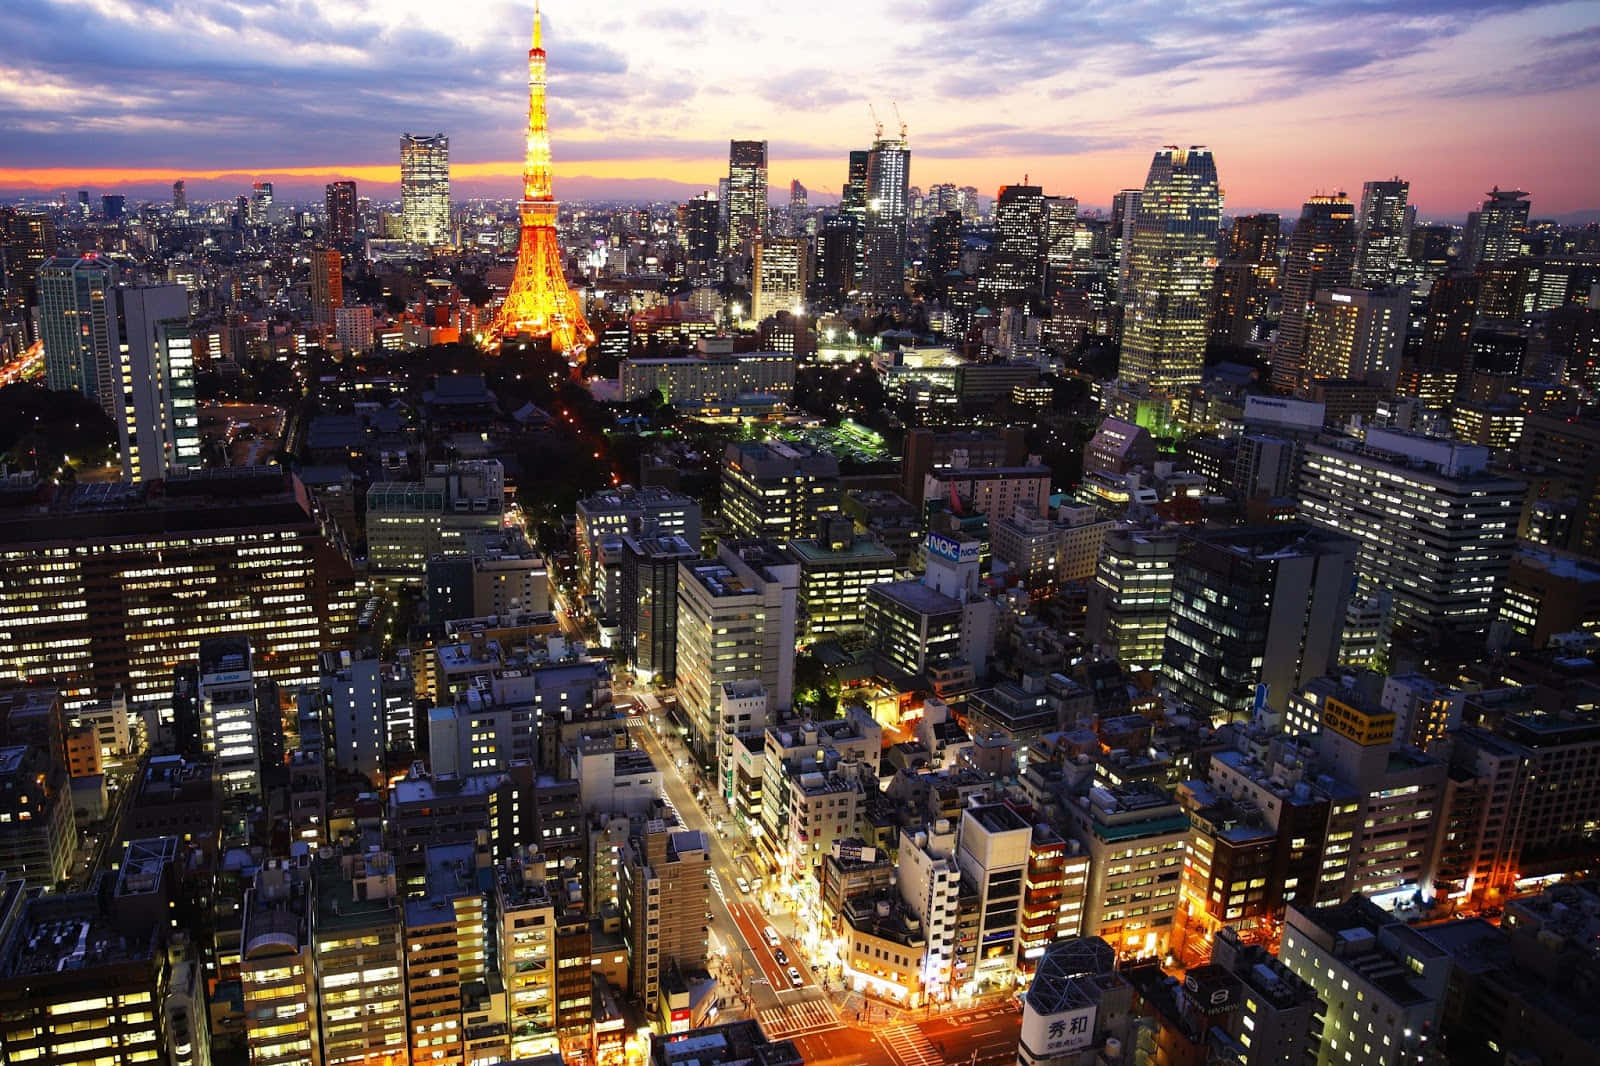 Denutrolige Byudsigt Over Tokyo, Japan Imponerer Alle, Der Besøger Det.